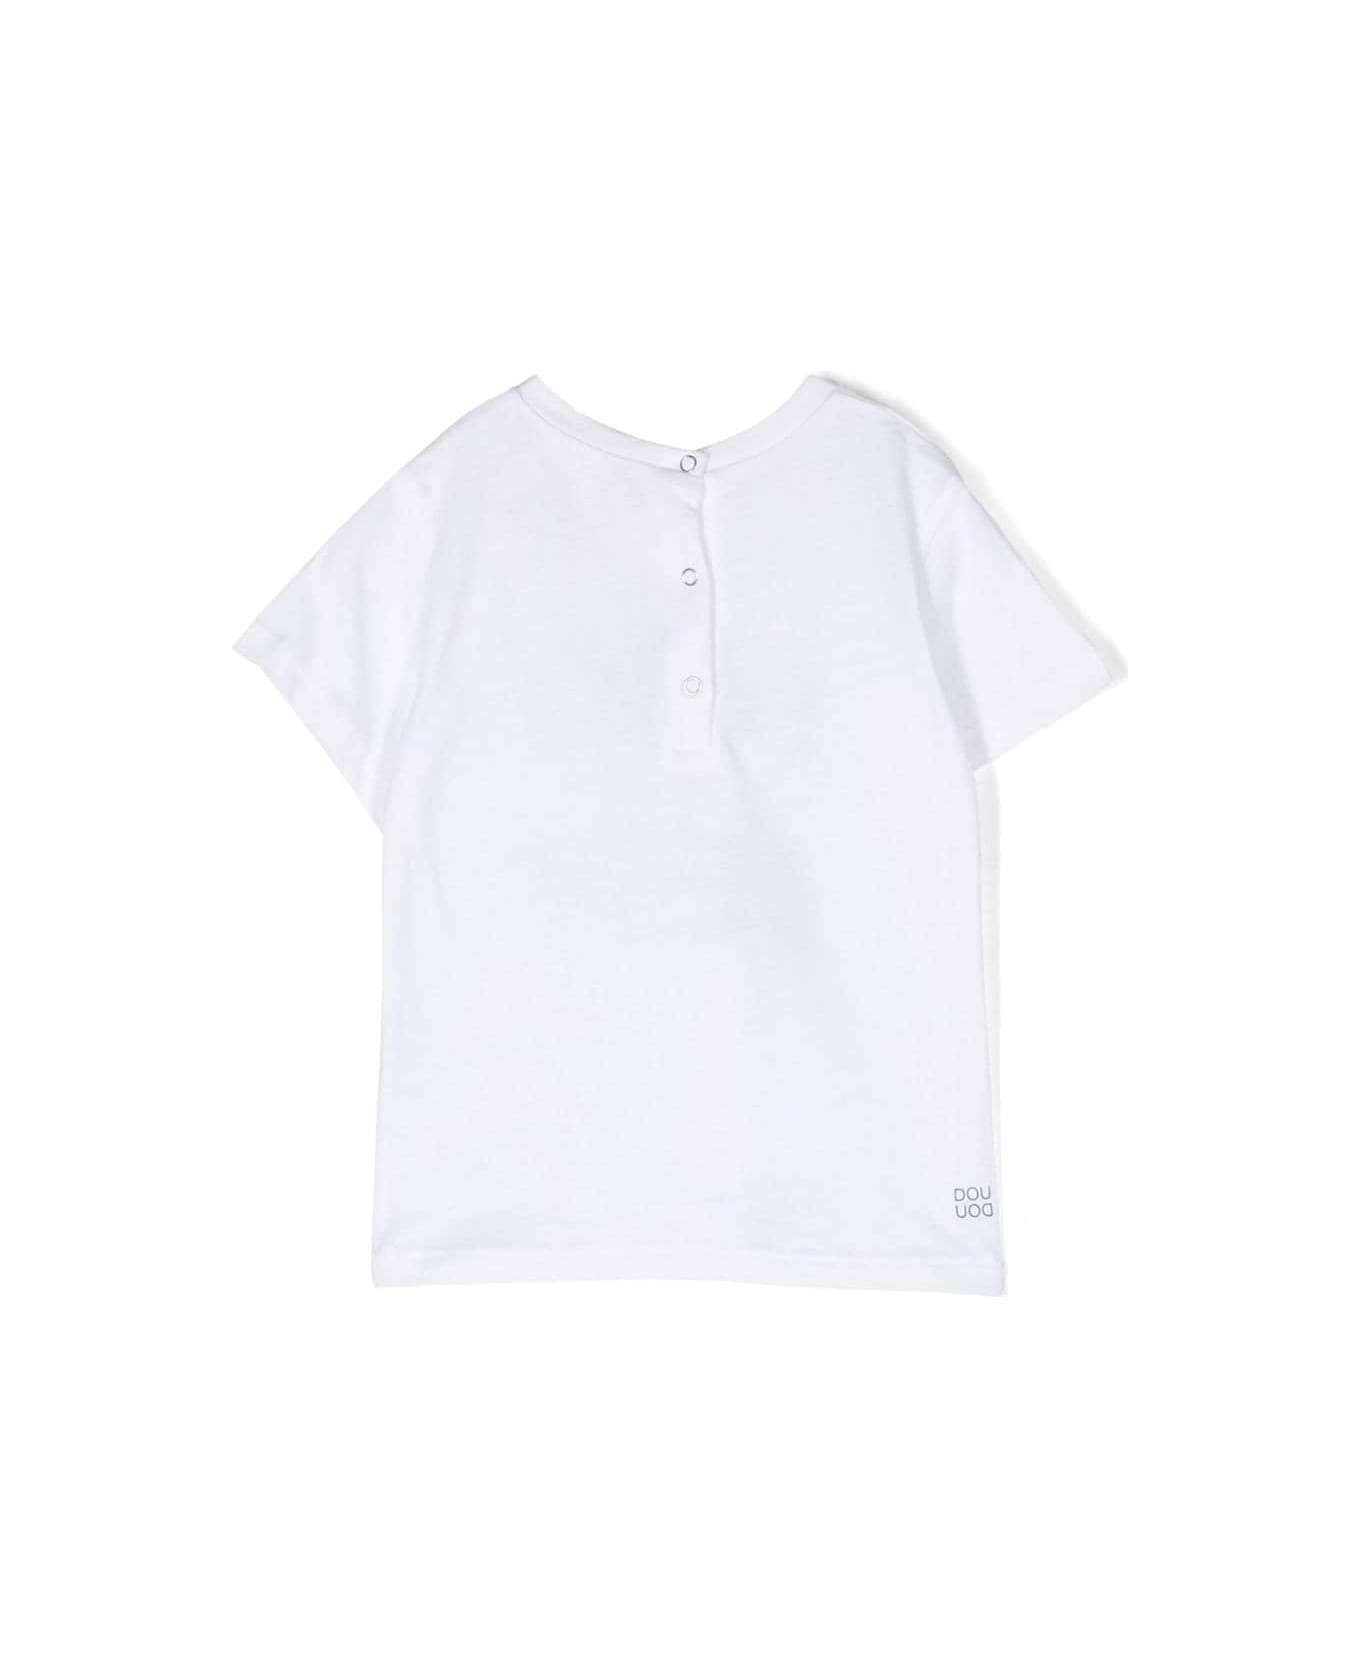 Douuod Printed T-shirt - White